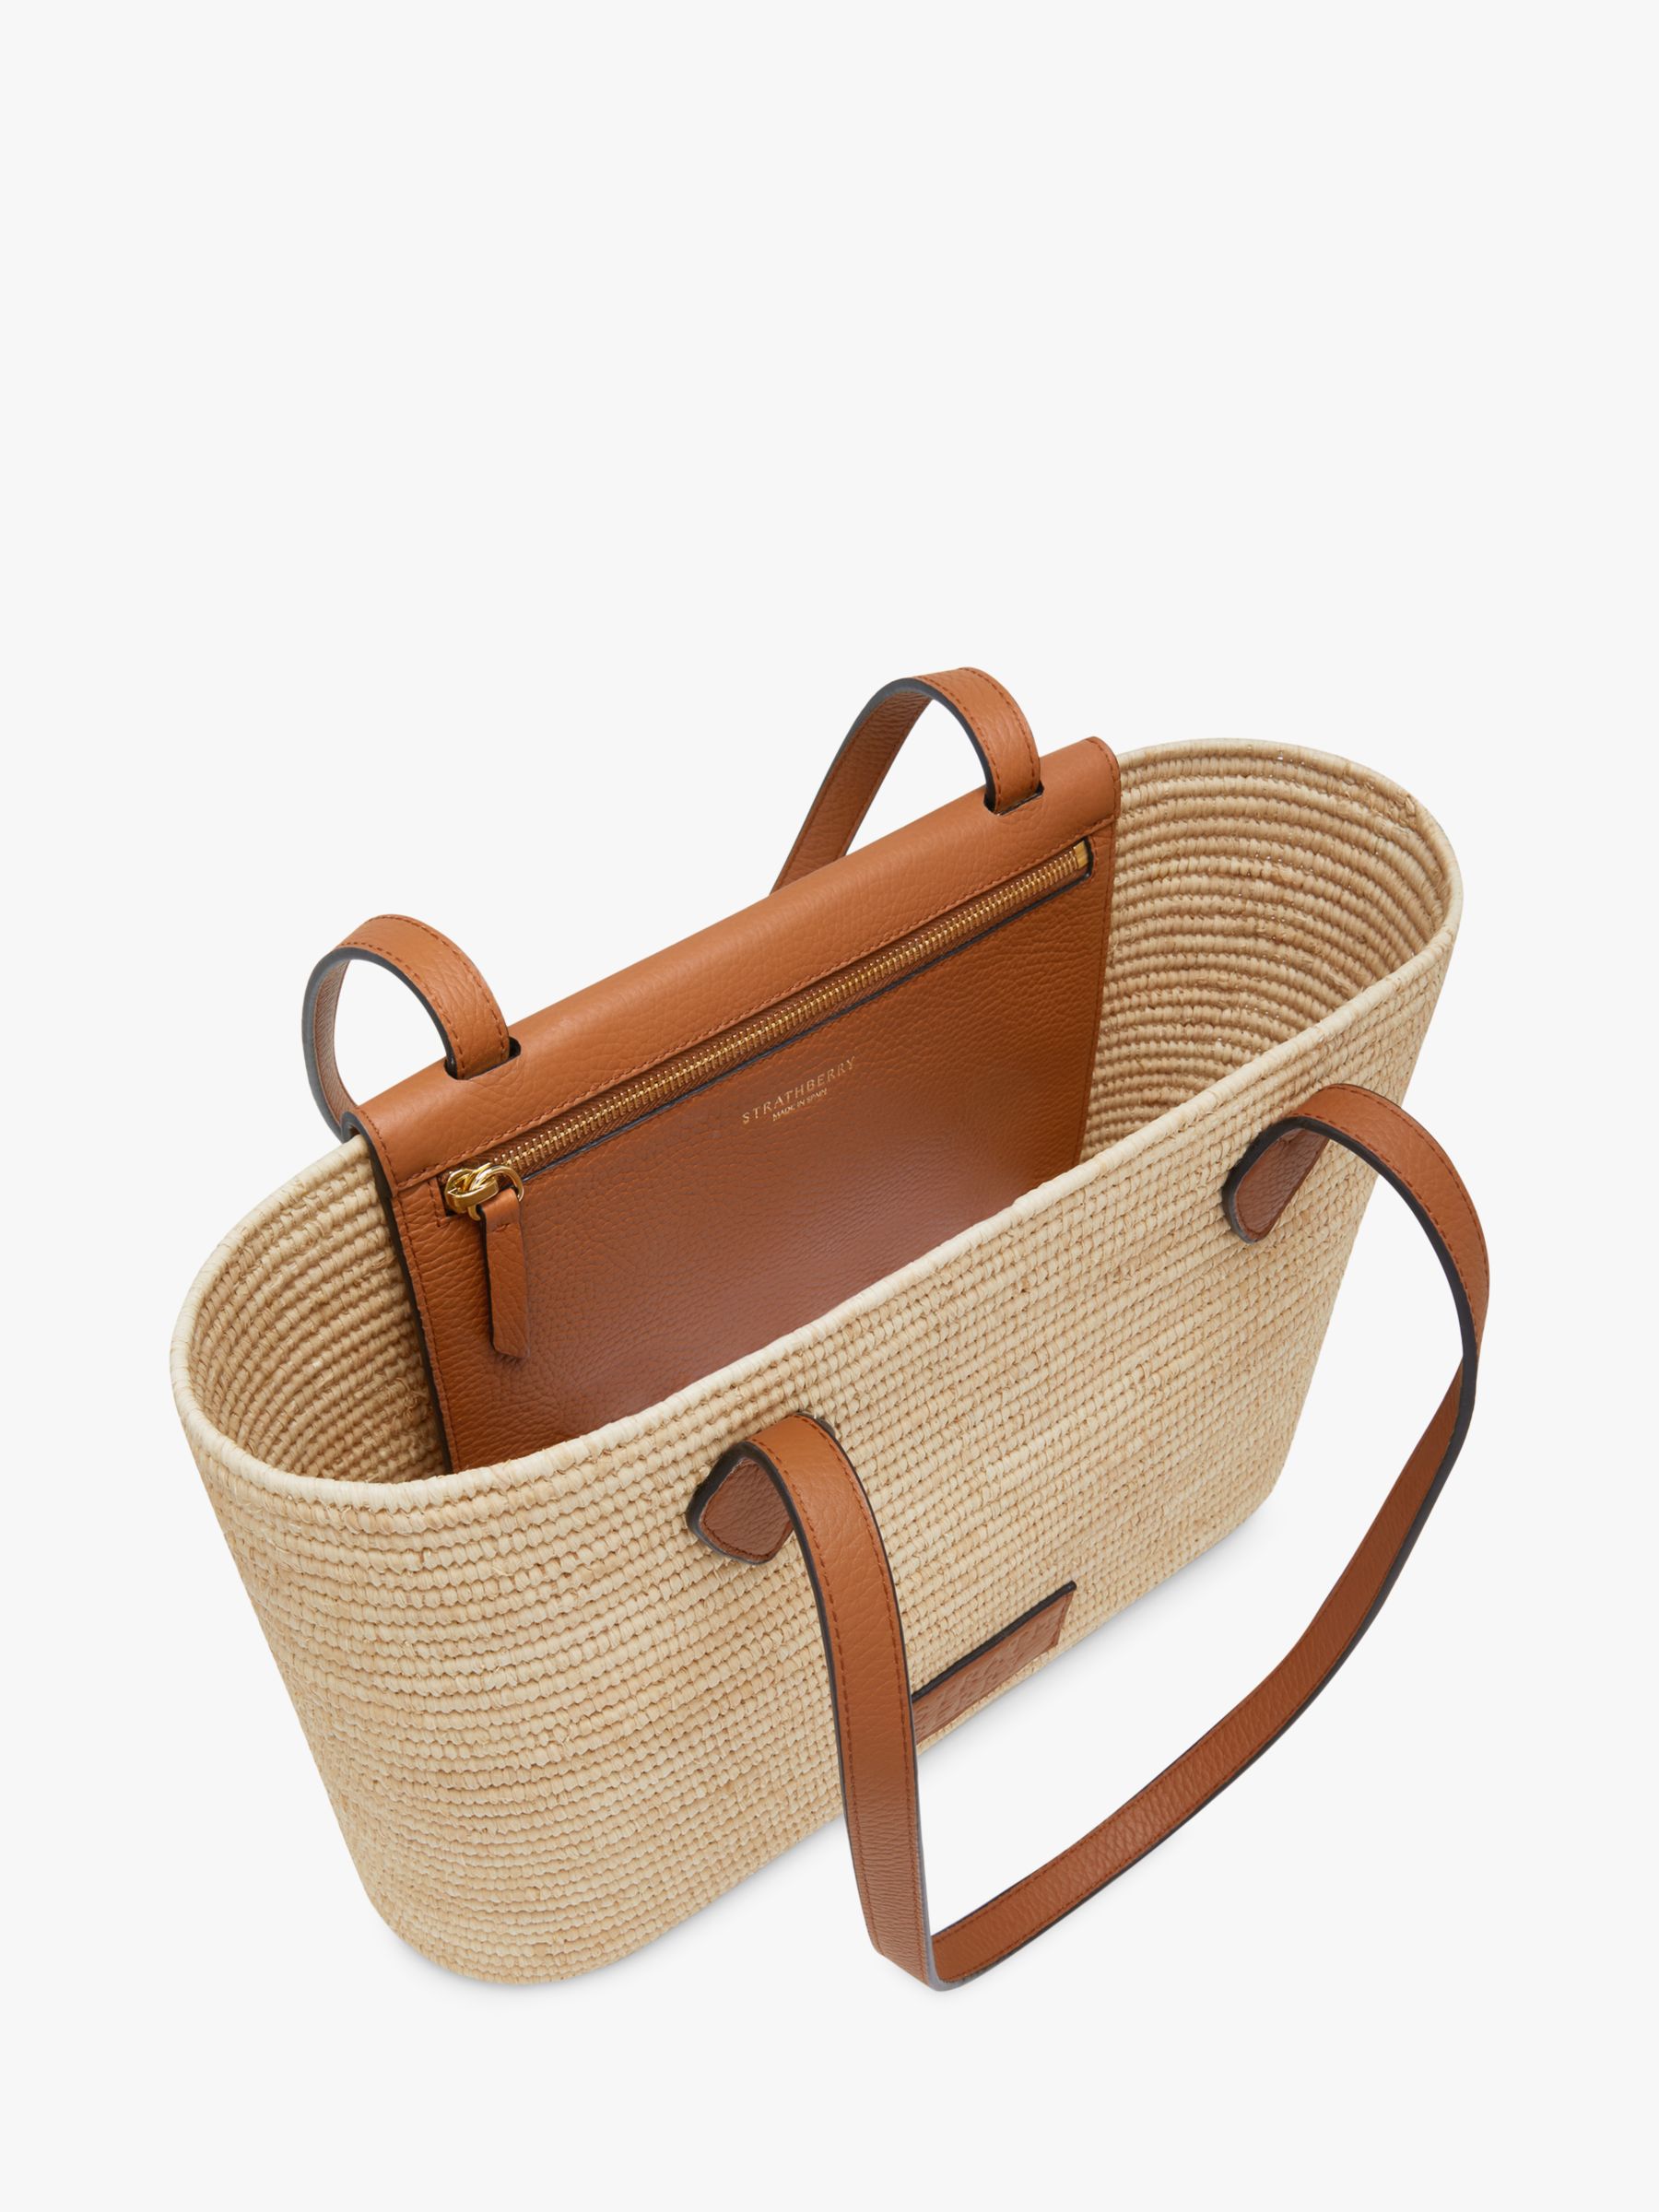 Buy Strathberry Raffia and Leather Basket Shoulder Bag Online at johnlewis.com